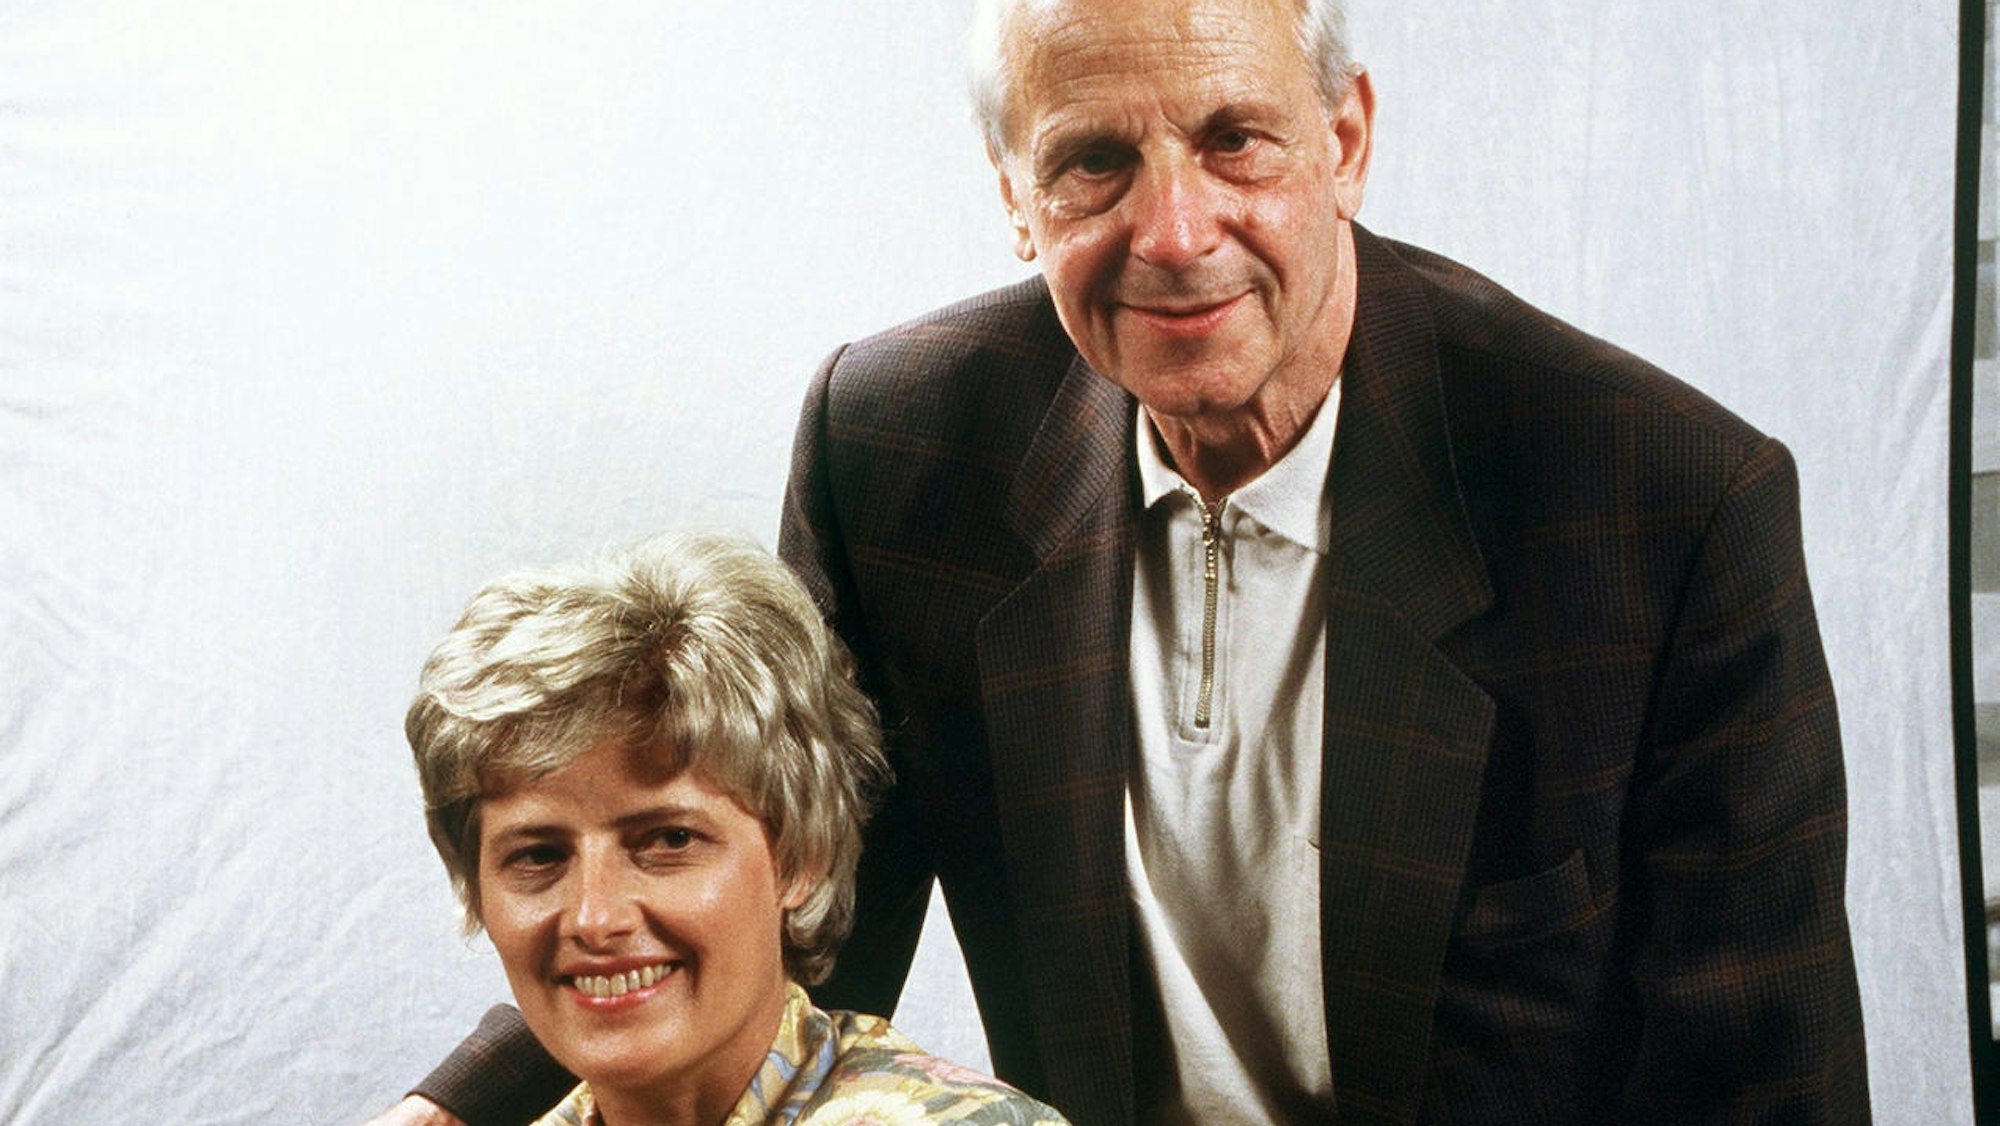 Die Grünen-Mitbegründerin Petra Kelly und ihr Gefährte in Politik und Privatleben, Gert Bastian auf einem Archivfoto vom Juni 1992.